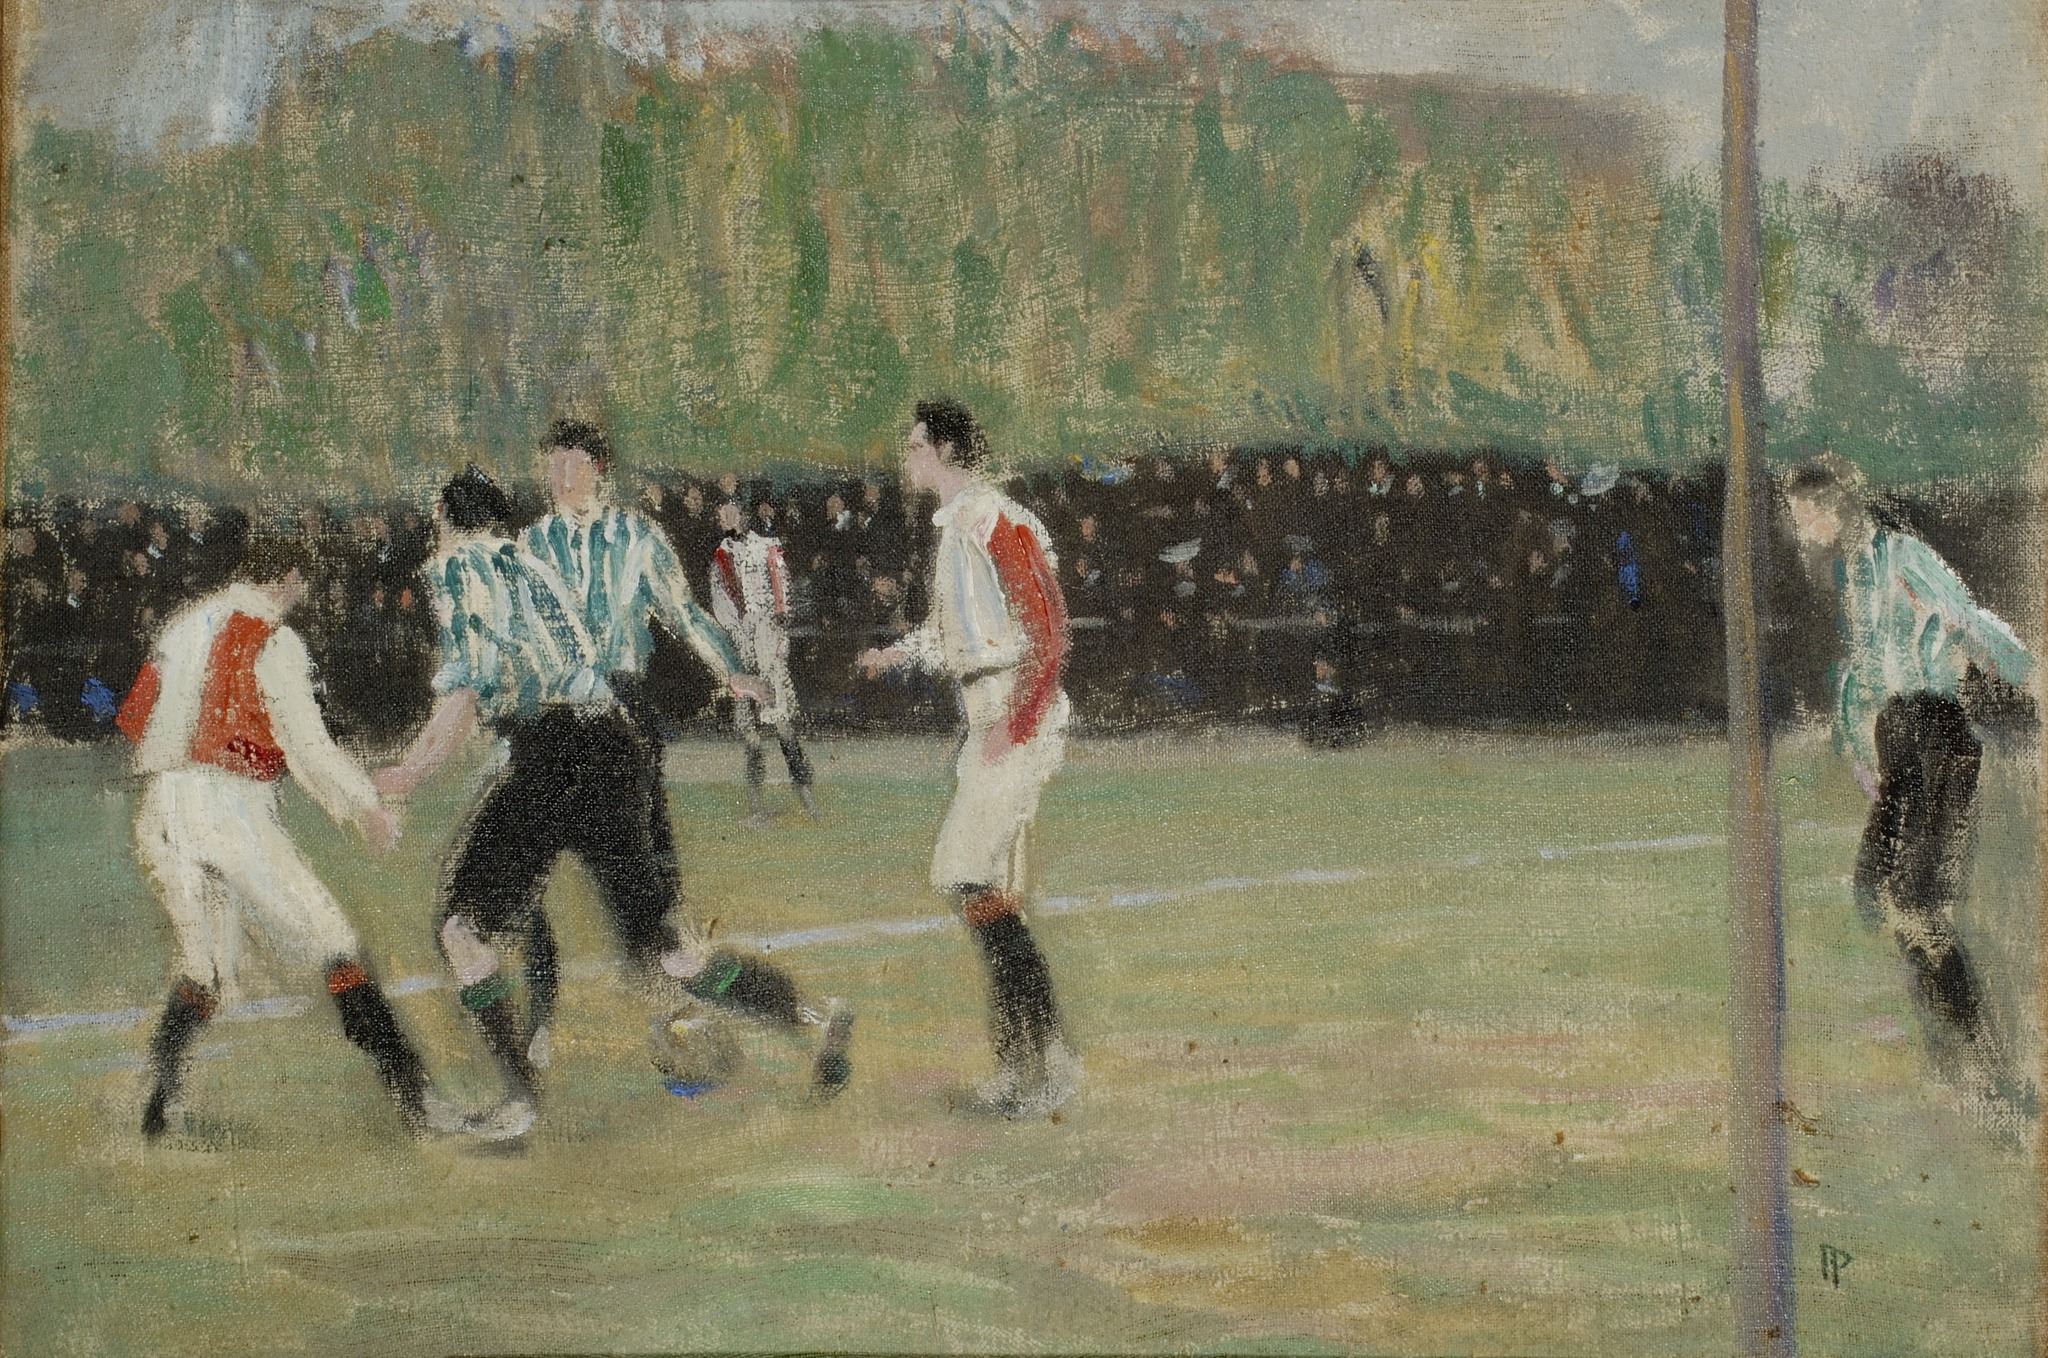 Jan Preisler, Soccer, 1905. Source: GAVU